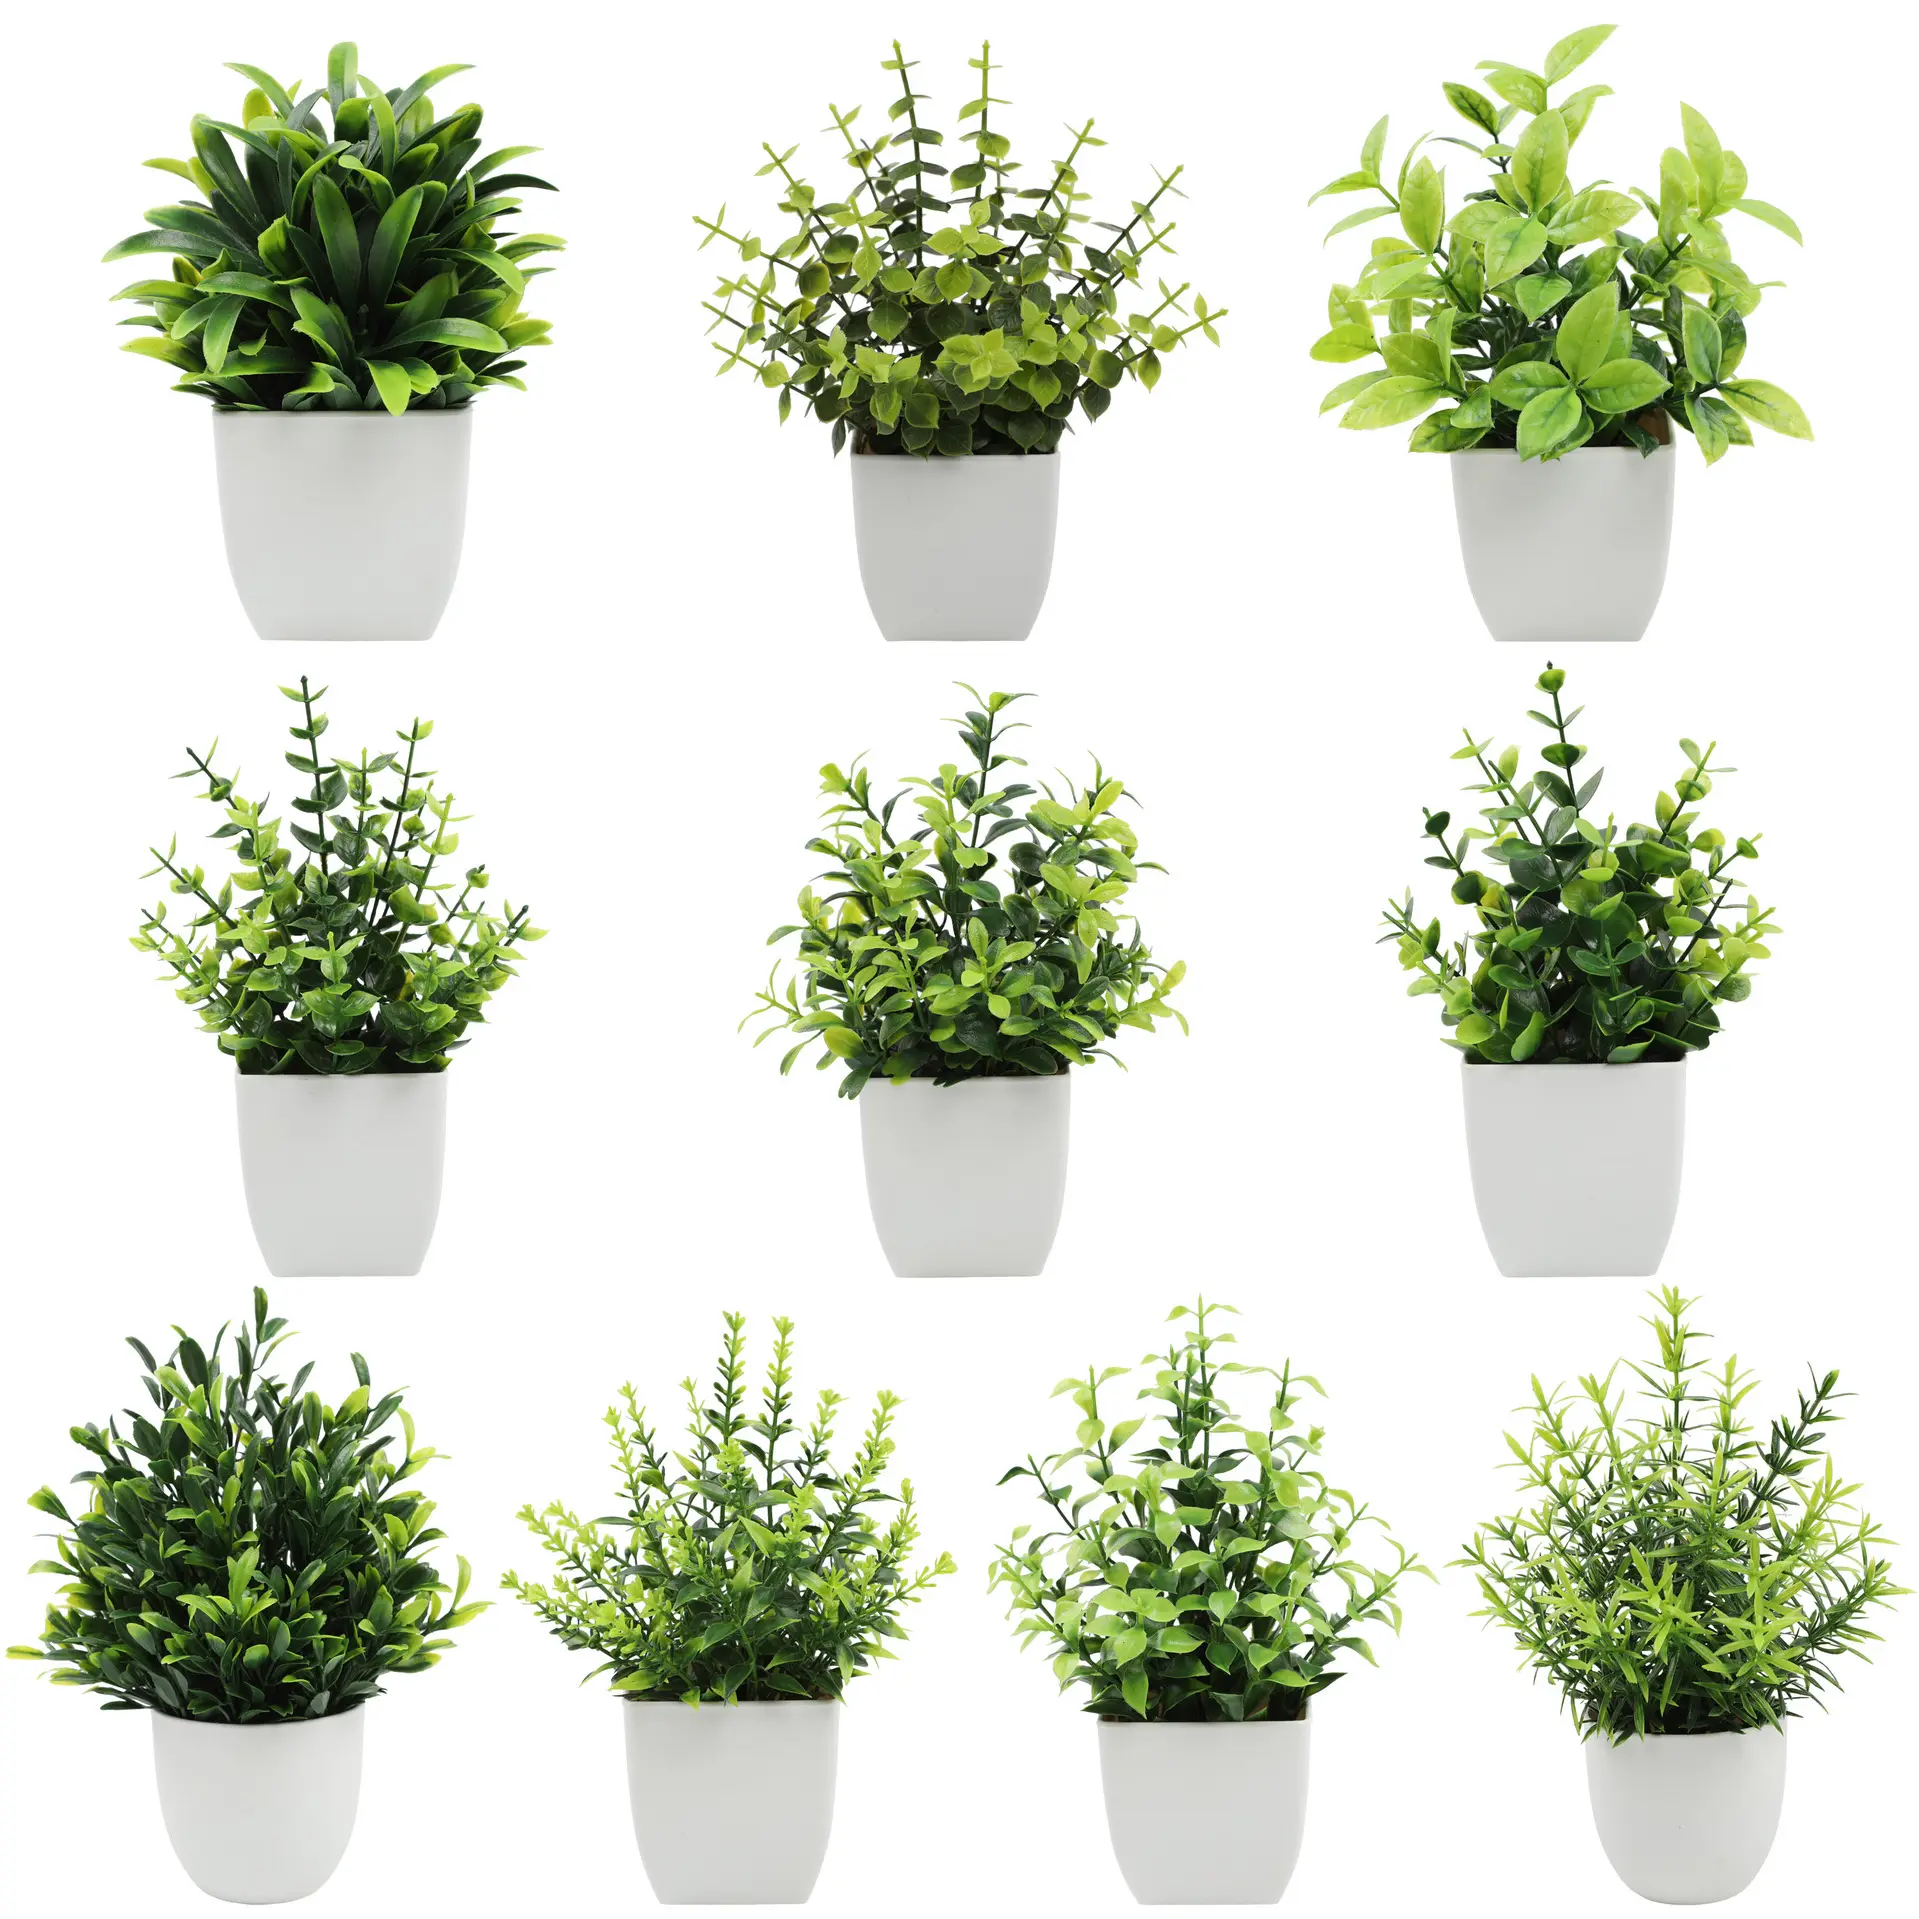 Mydays all'ingrosso OEM/ODM artificiale Mini piante in vaso falso spruzzato pianta di eucalipto in vasi casa piante per l'home Office